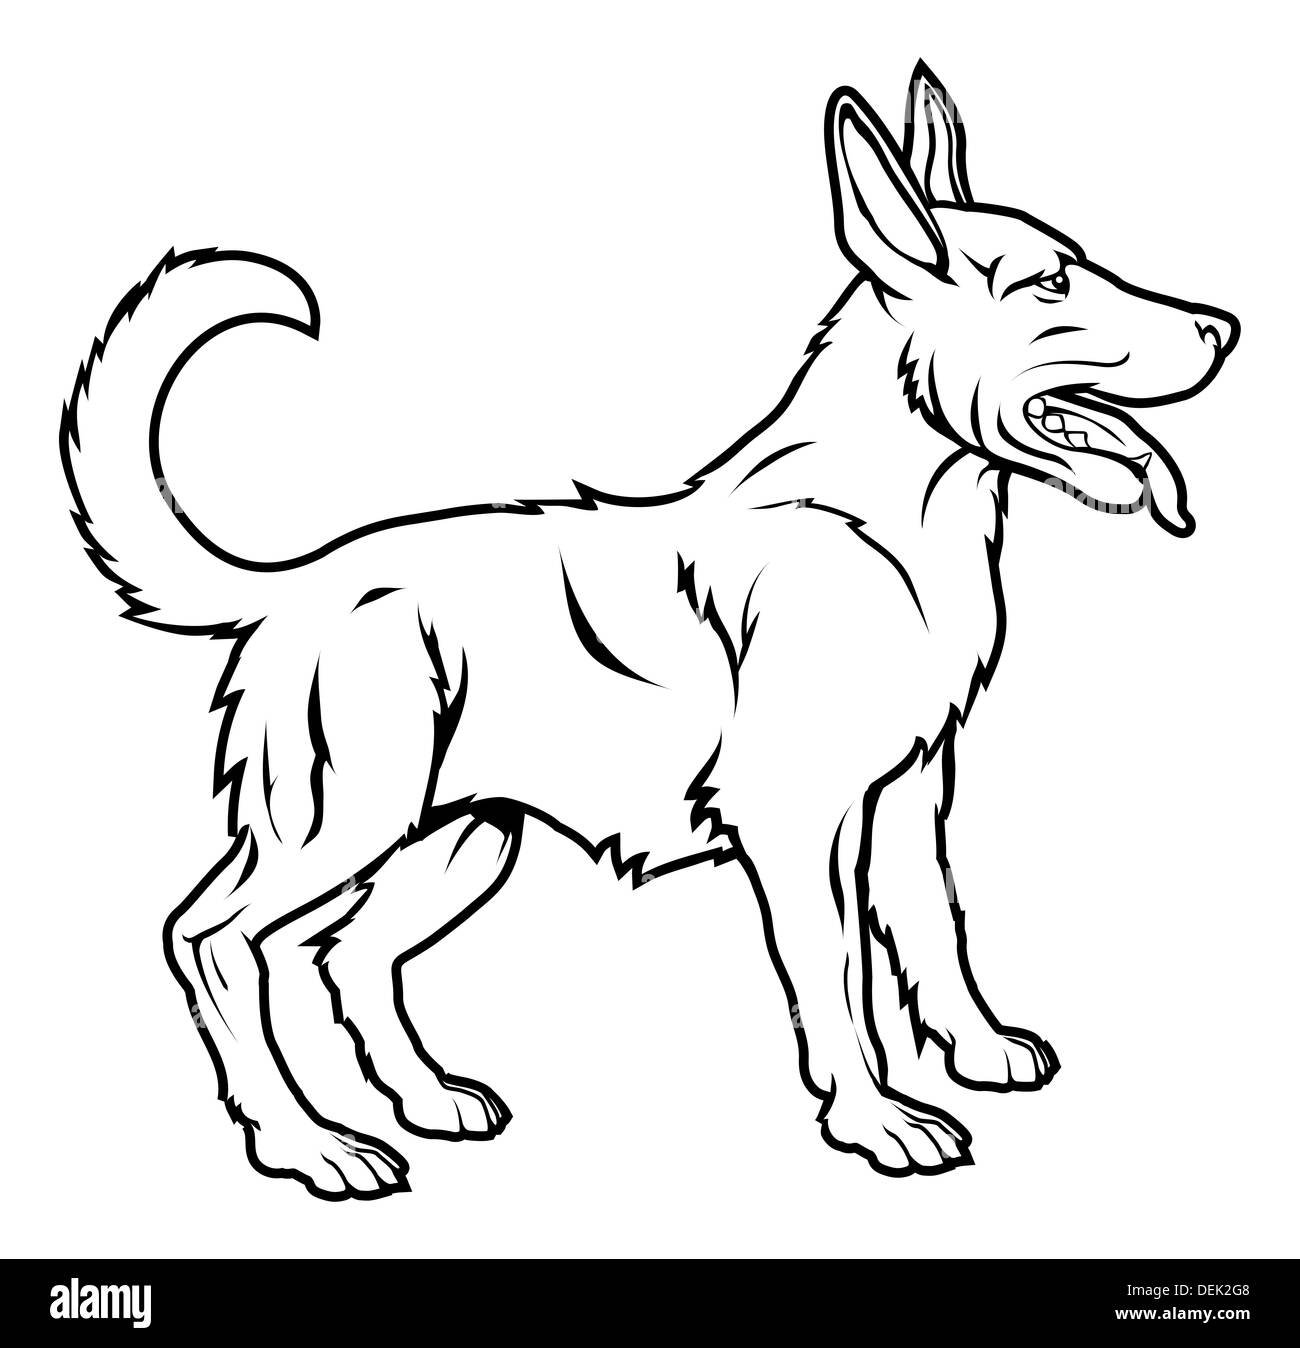 Une illustration d'un chien stylisé peut-être un tatouage de chien Banque D'Images